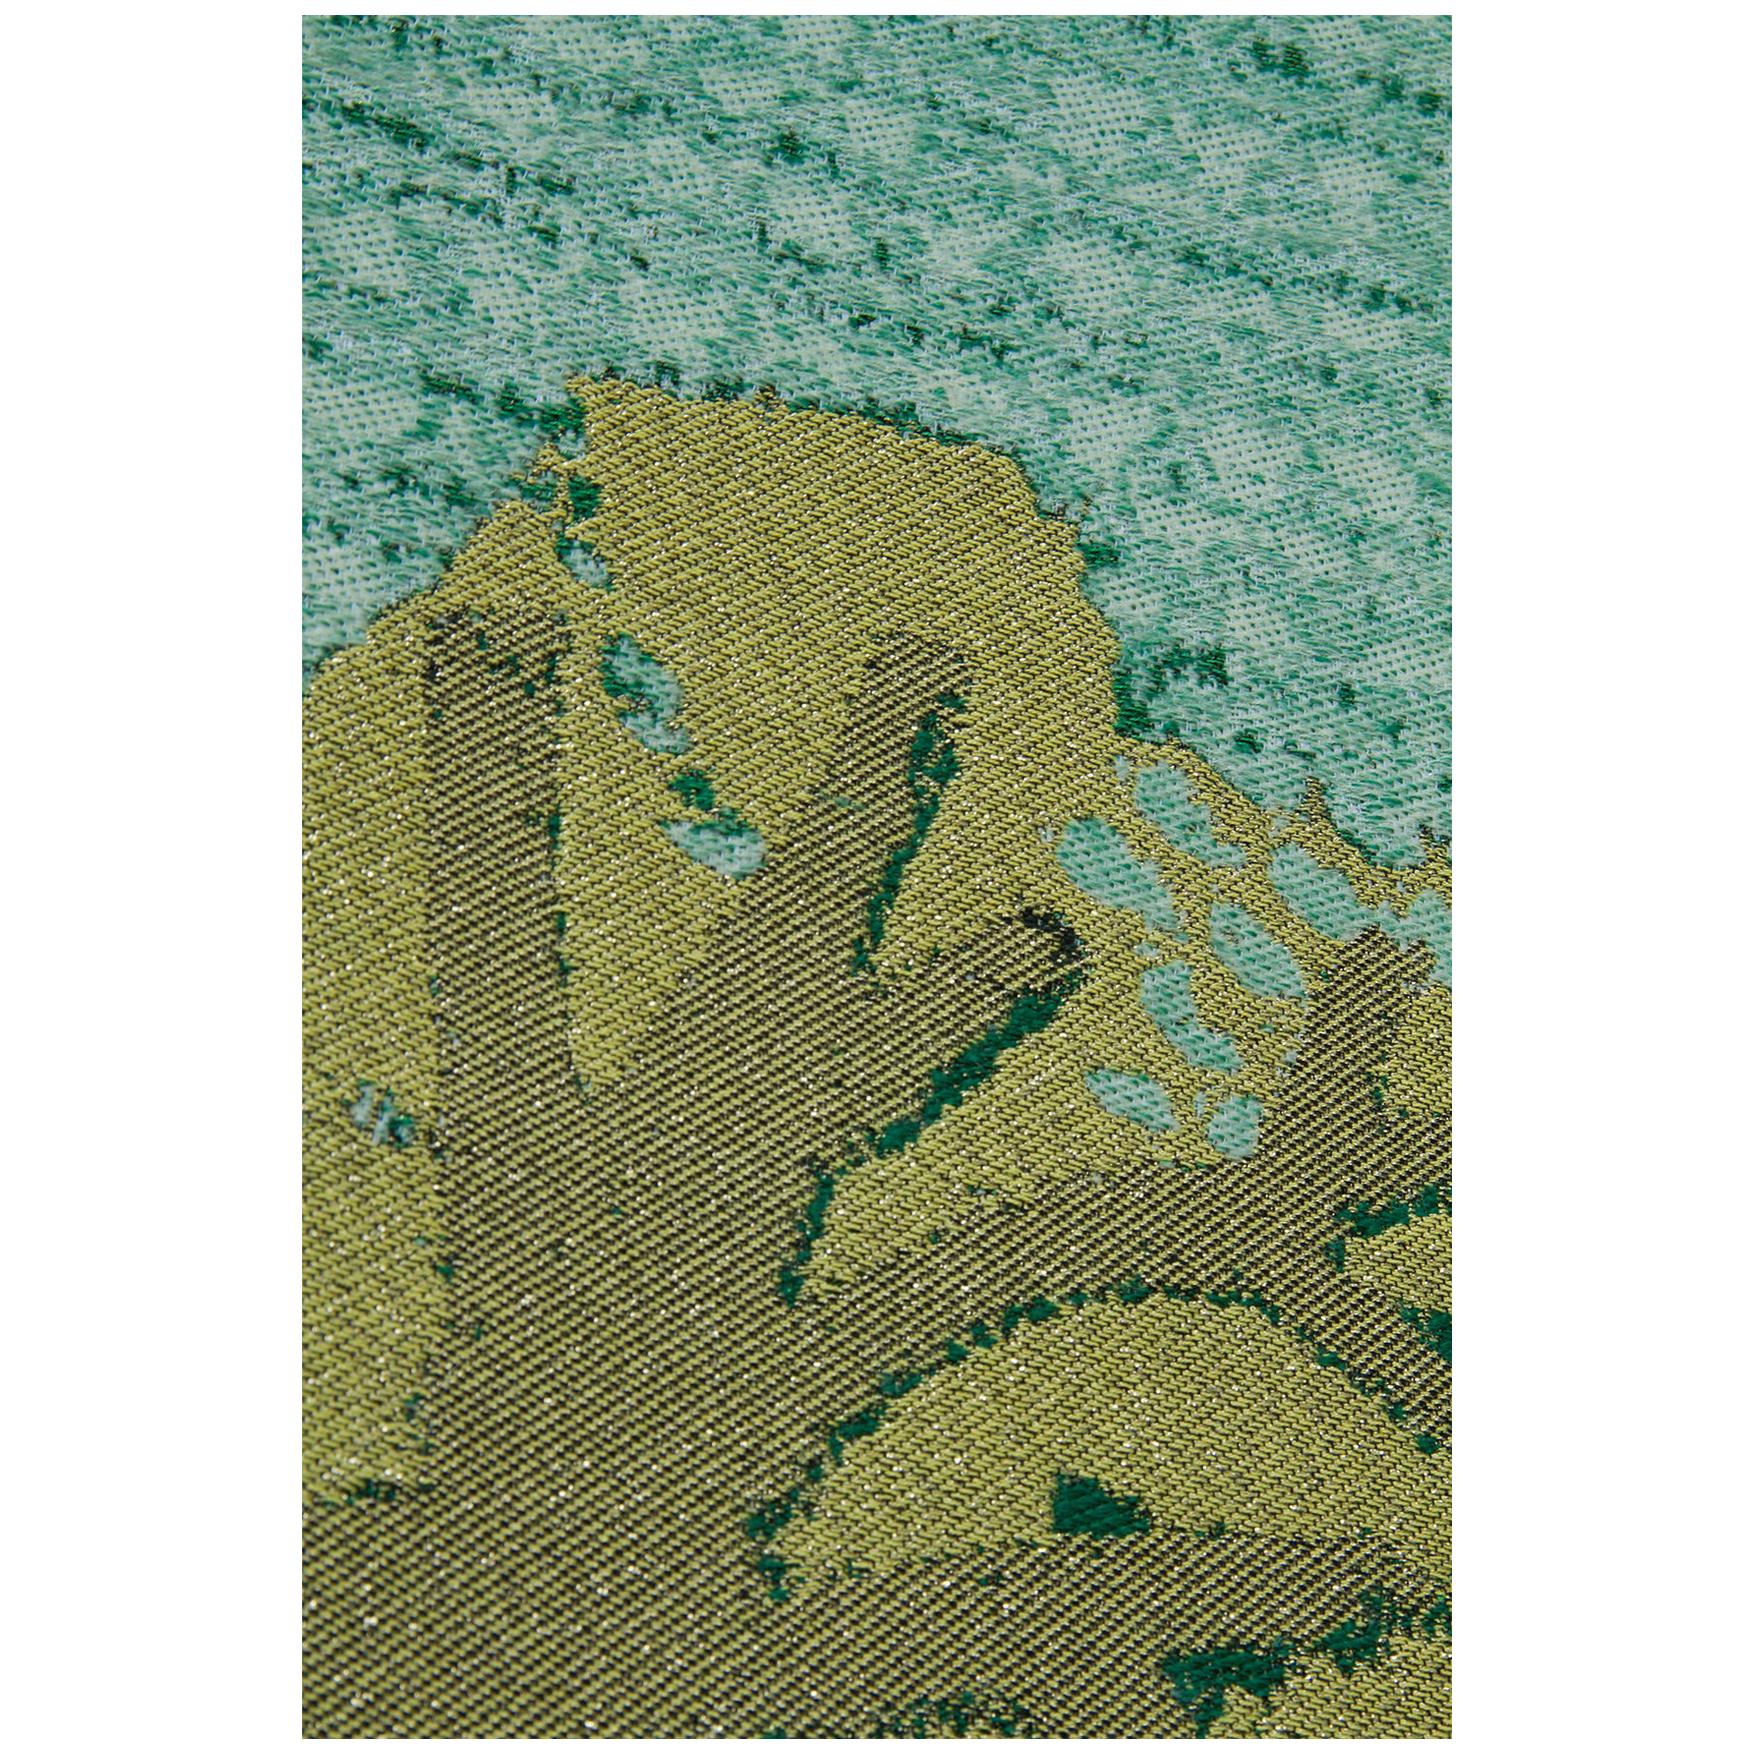 Originalkunstwerk von Kiki van Eijk.
Diese Wandteppiche erinnern an holländische Landschaften, in deren Zentrum jeweils ein aus Goldfäden gewebter Baum steht. Jedes Panorama zielt darauf ab, die verschiedenen Facetten und Qualitäten der Natur durch